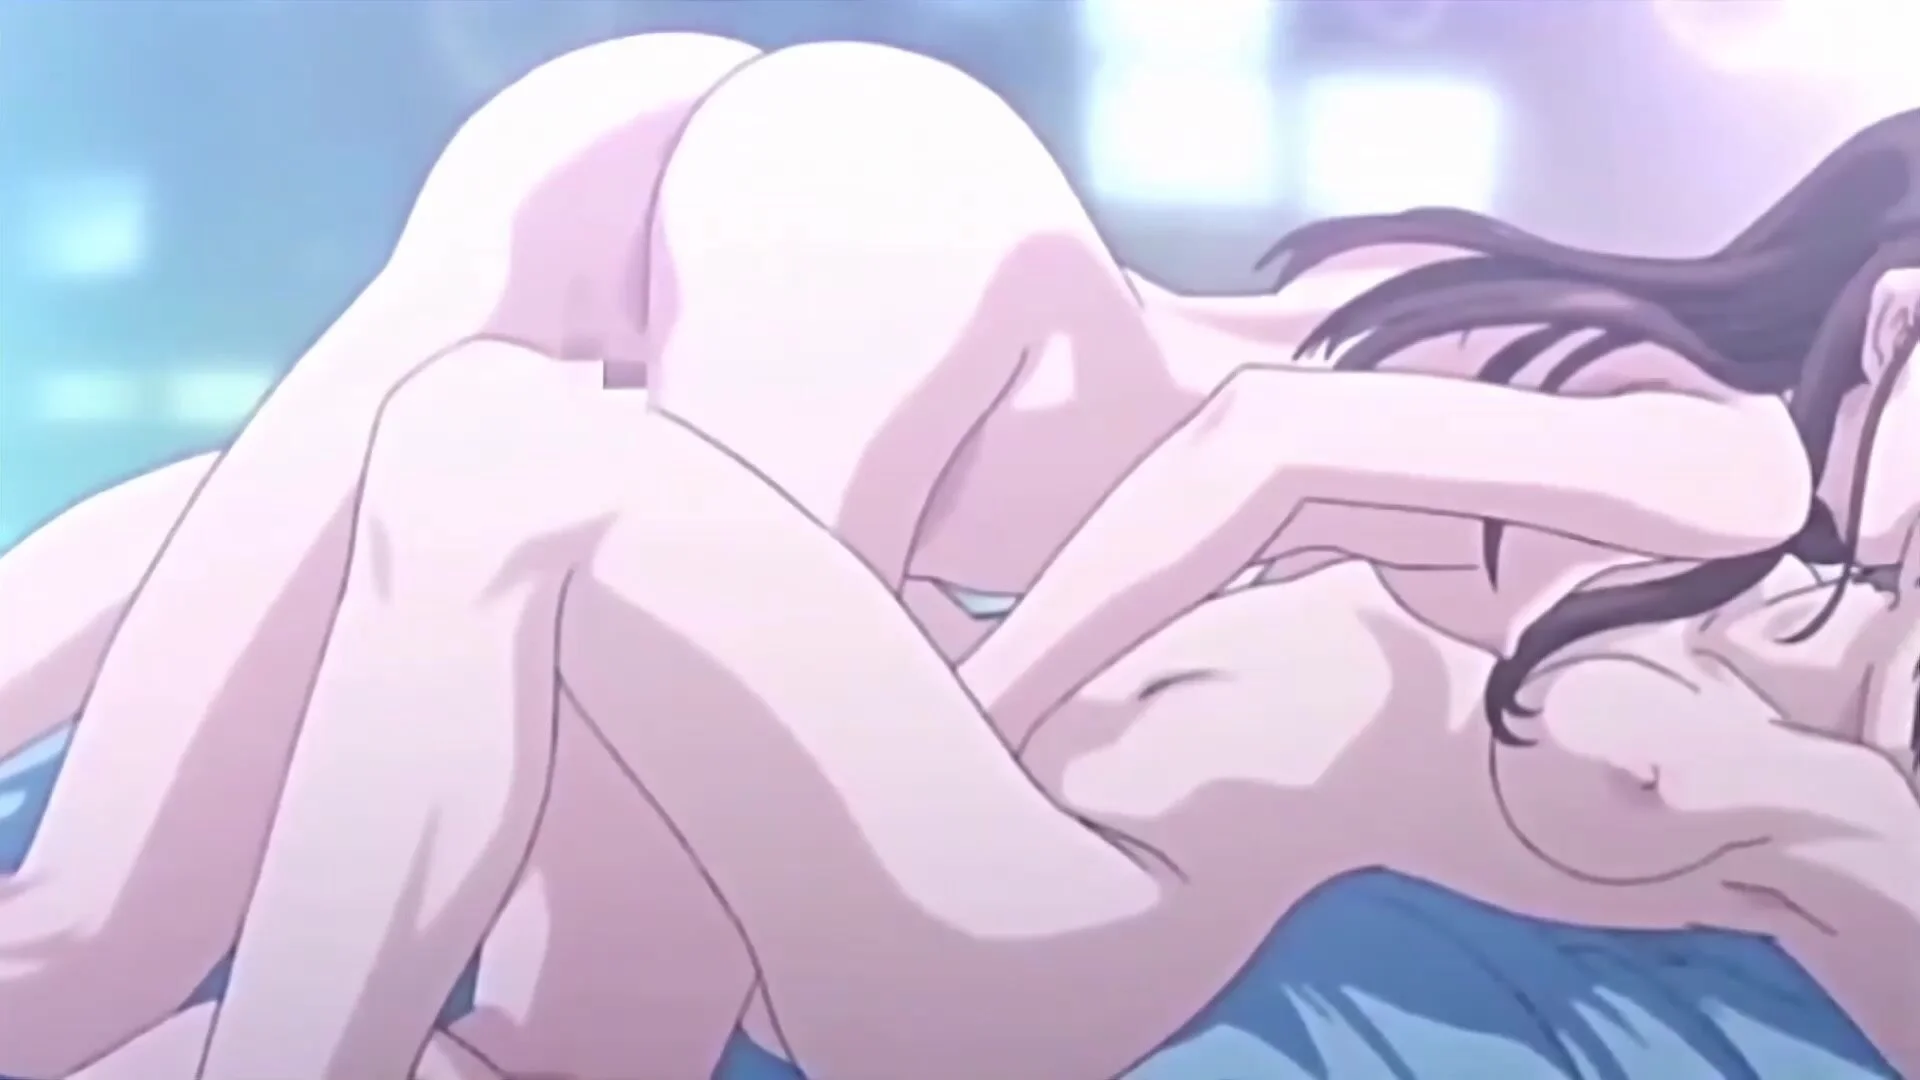 Hot anime girls having lesbian sex